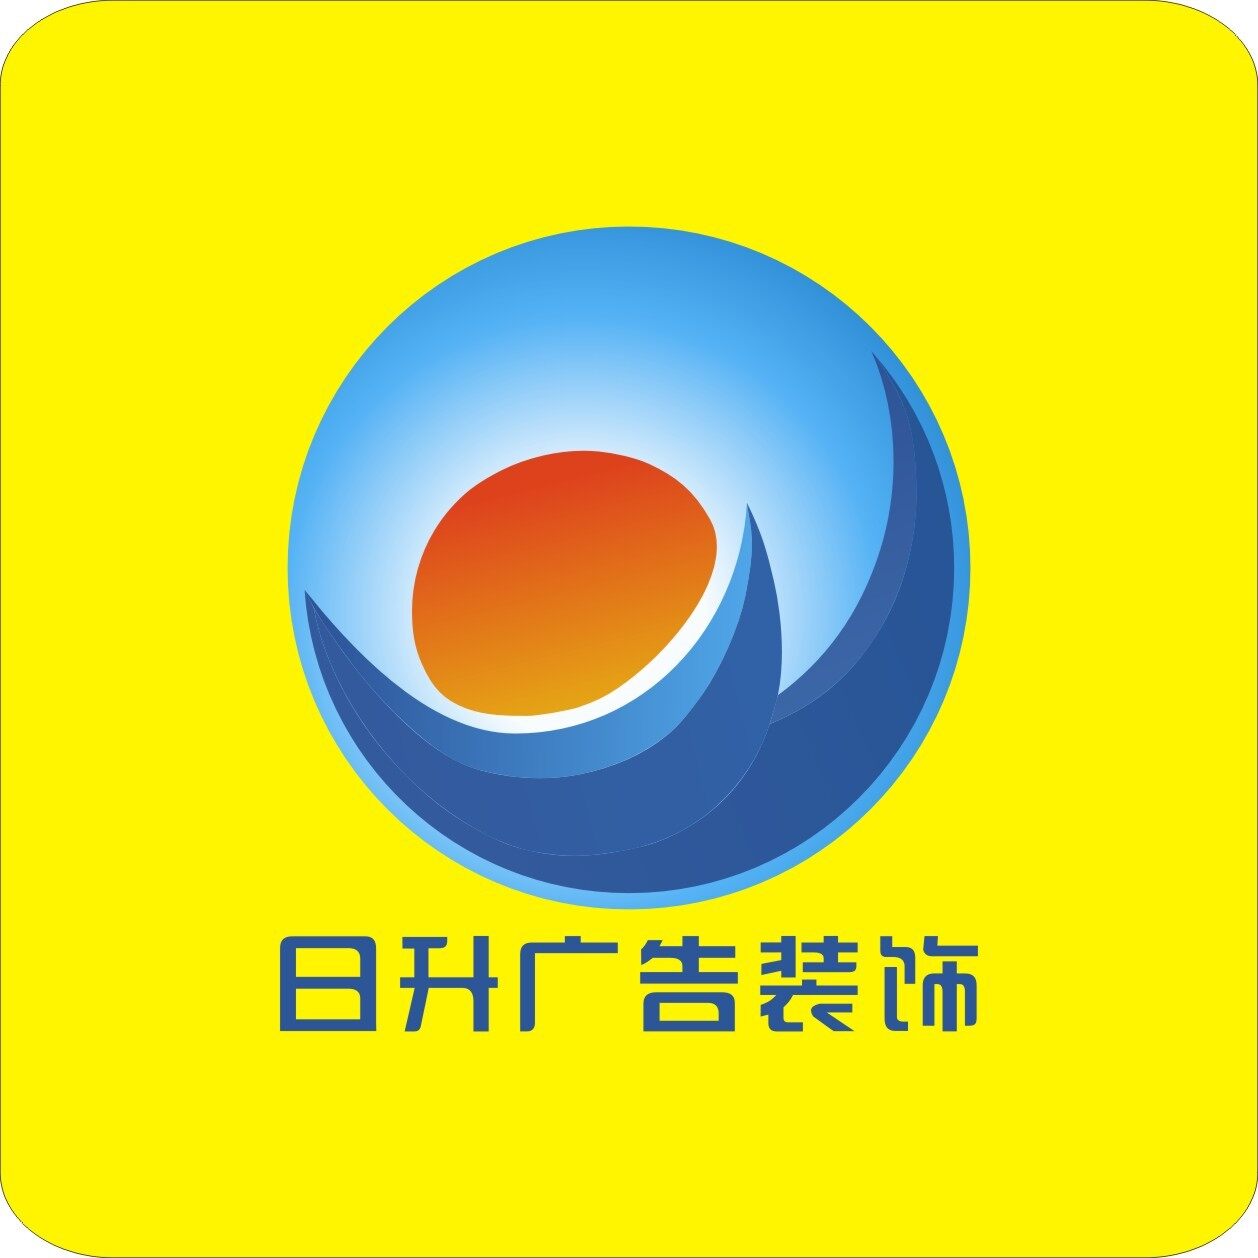 东莞市日升广告装饰有限公司logo